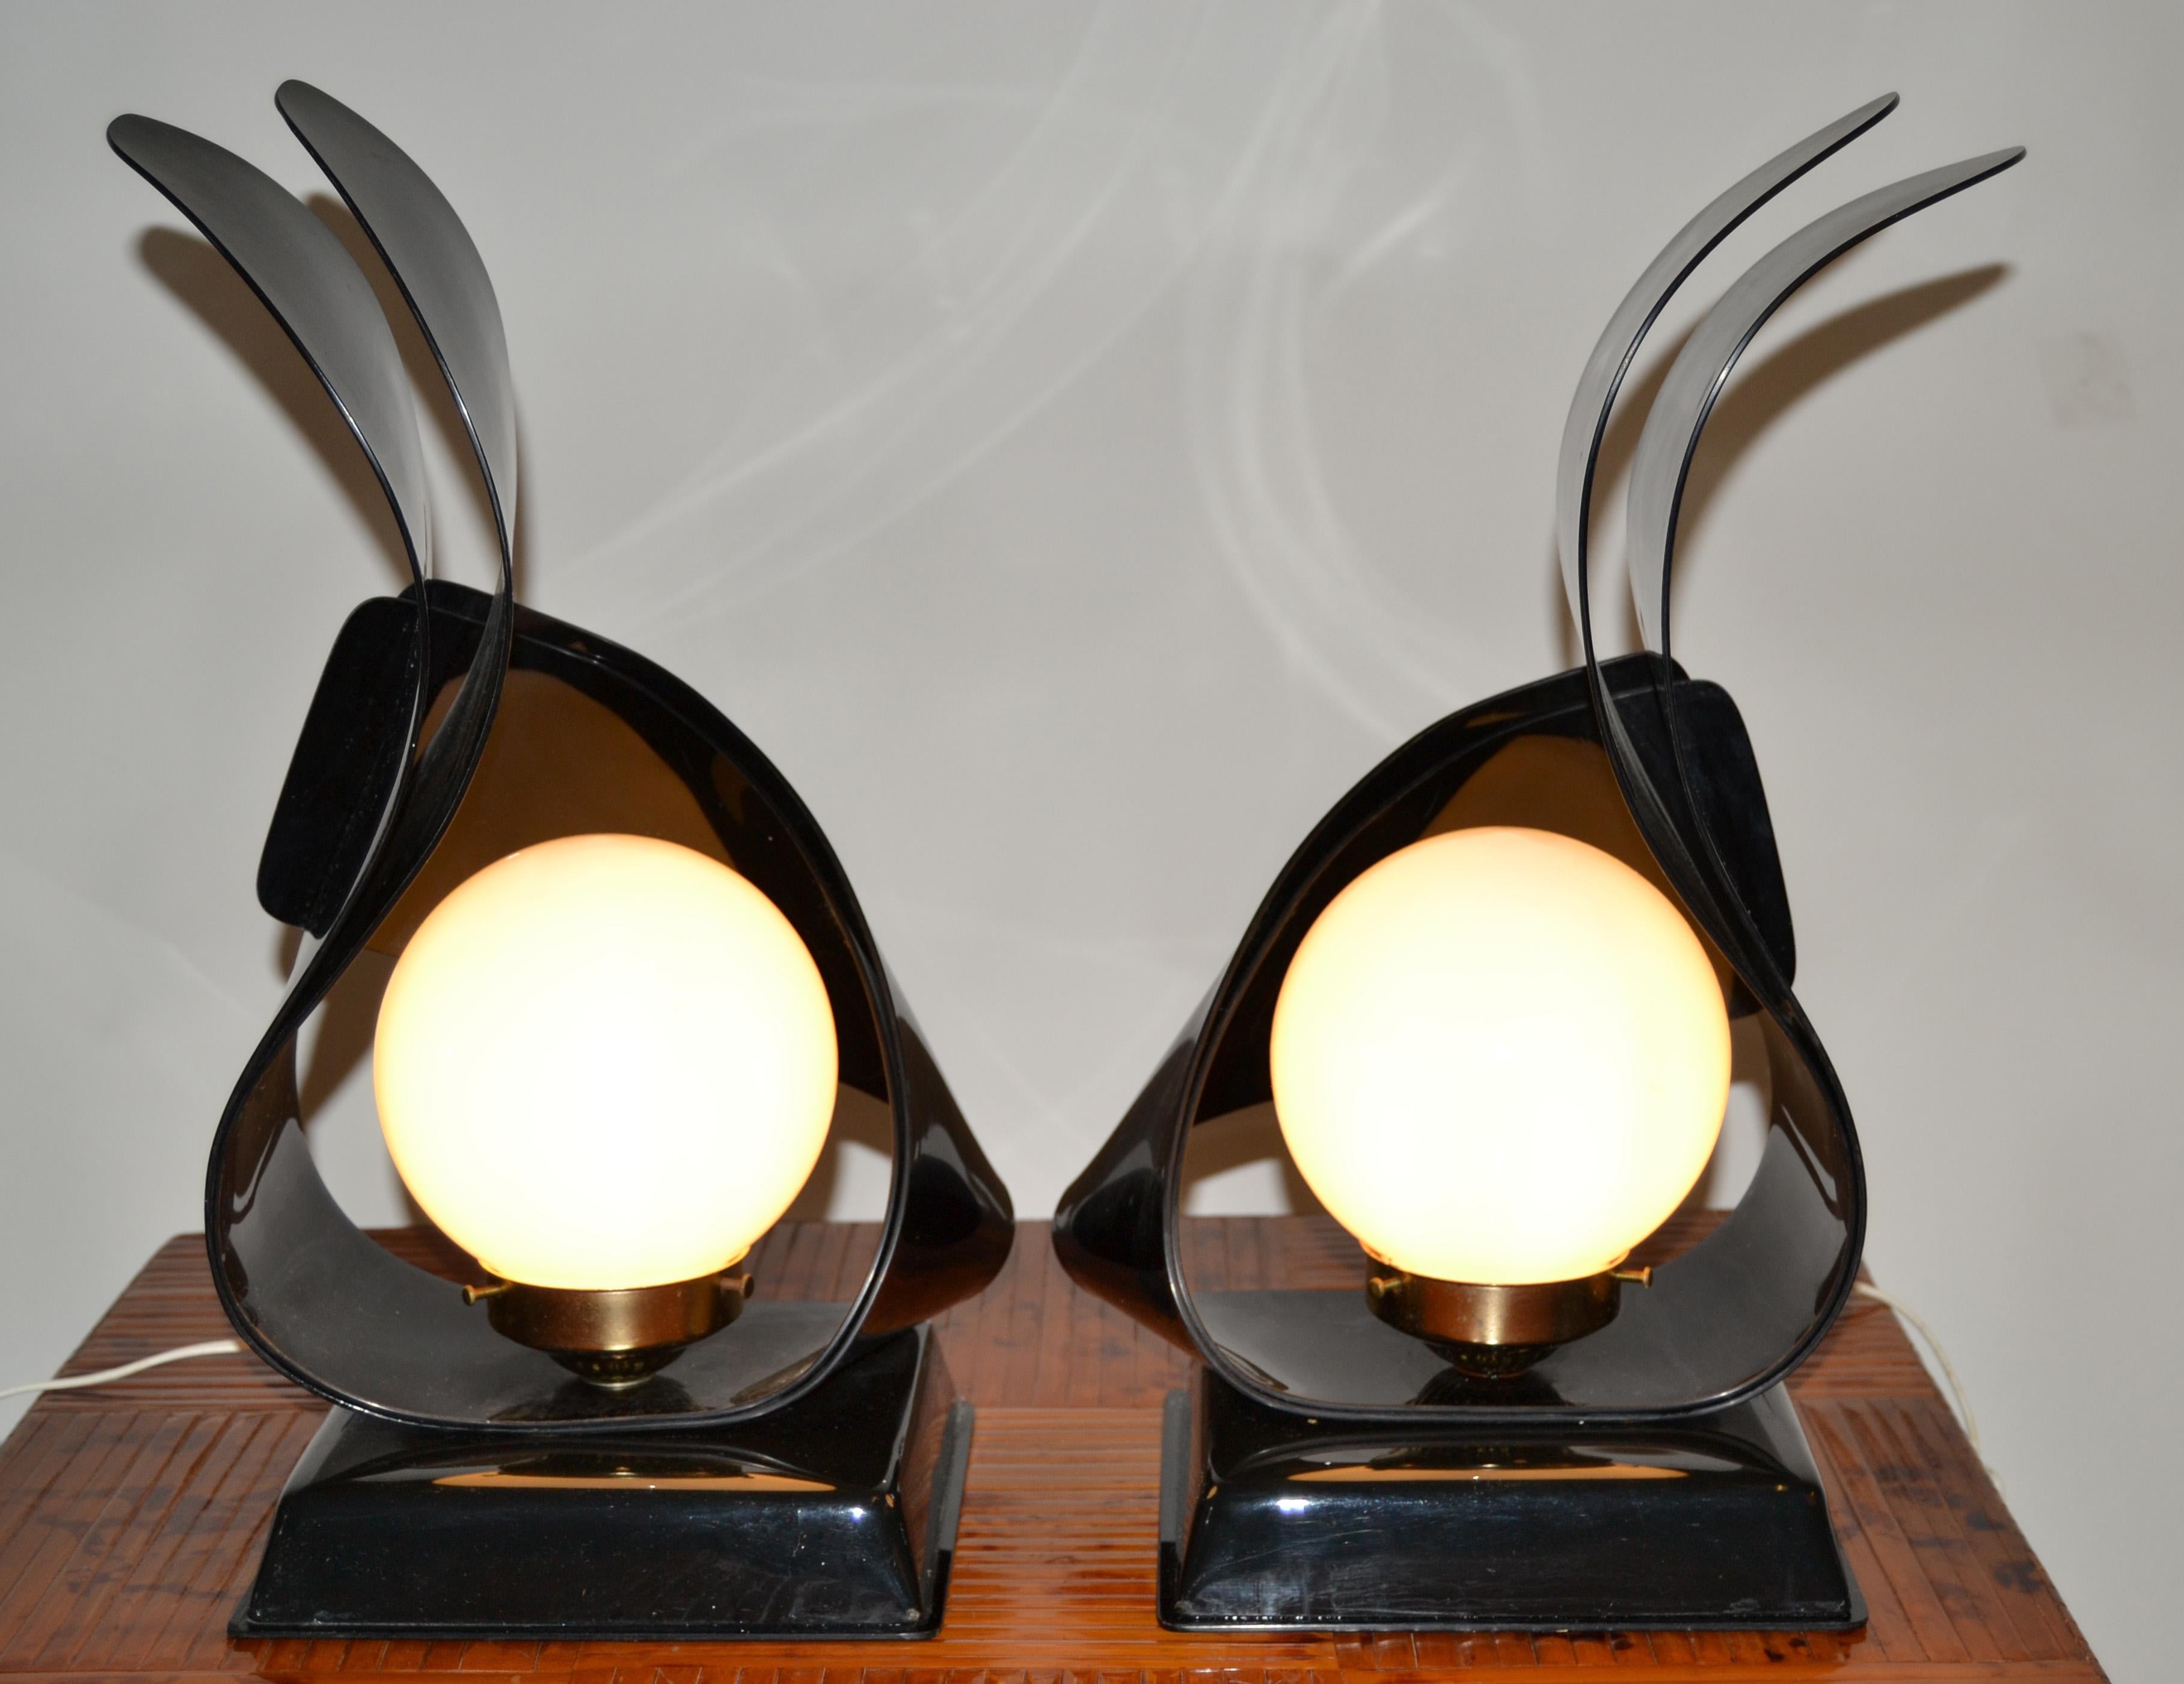 Ein Paar schwarze skulpturale Tischlampen aus Acryl von acrylic design.
Jede Lampe hat eine Milchglaskugel und nimmt eine max. 40-Watt-Glühbirne.
In perfektem Zustand und für die USA verkabelt.
Preis für das Paar. 
 